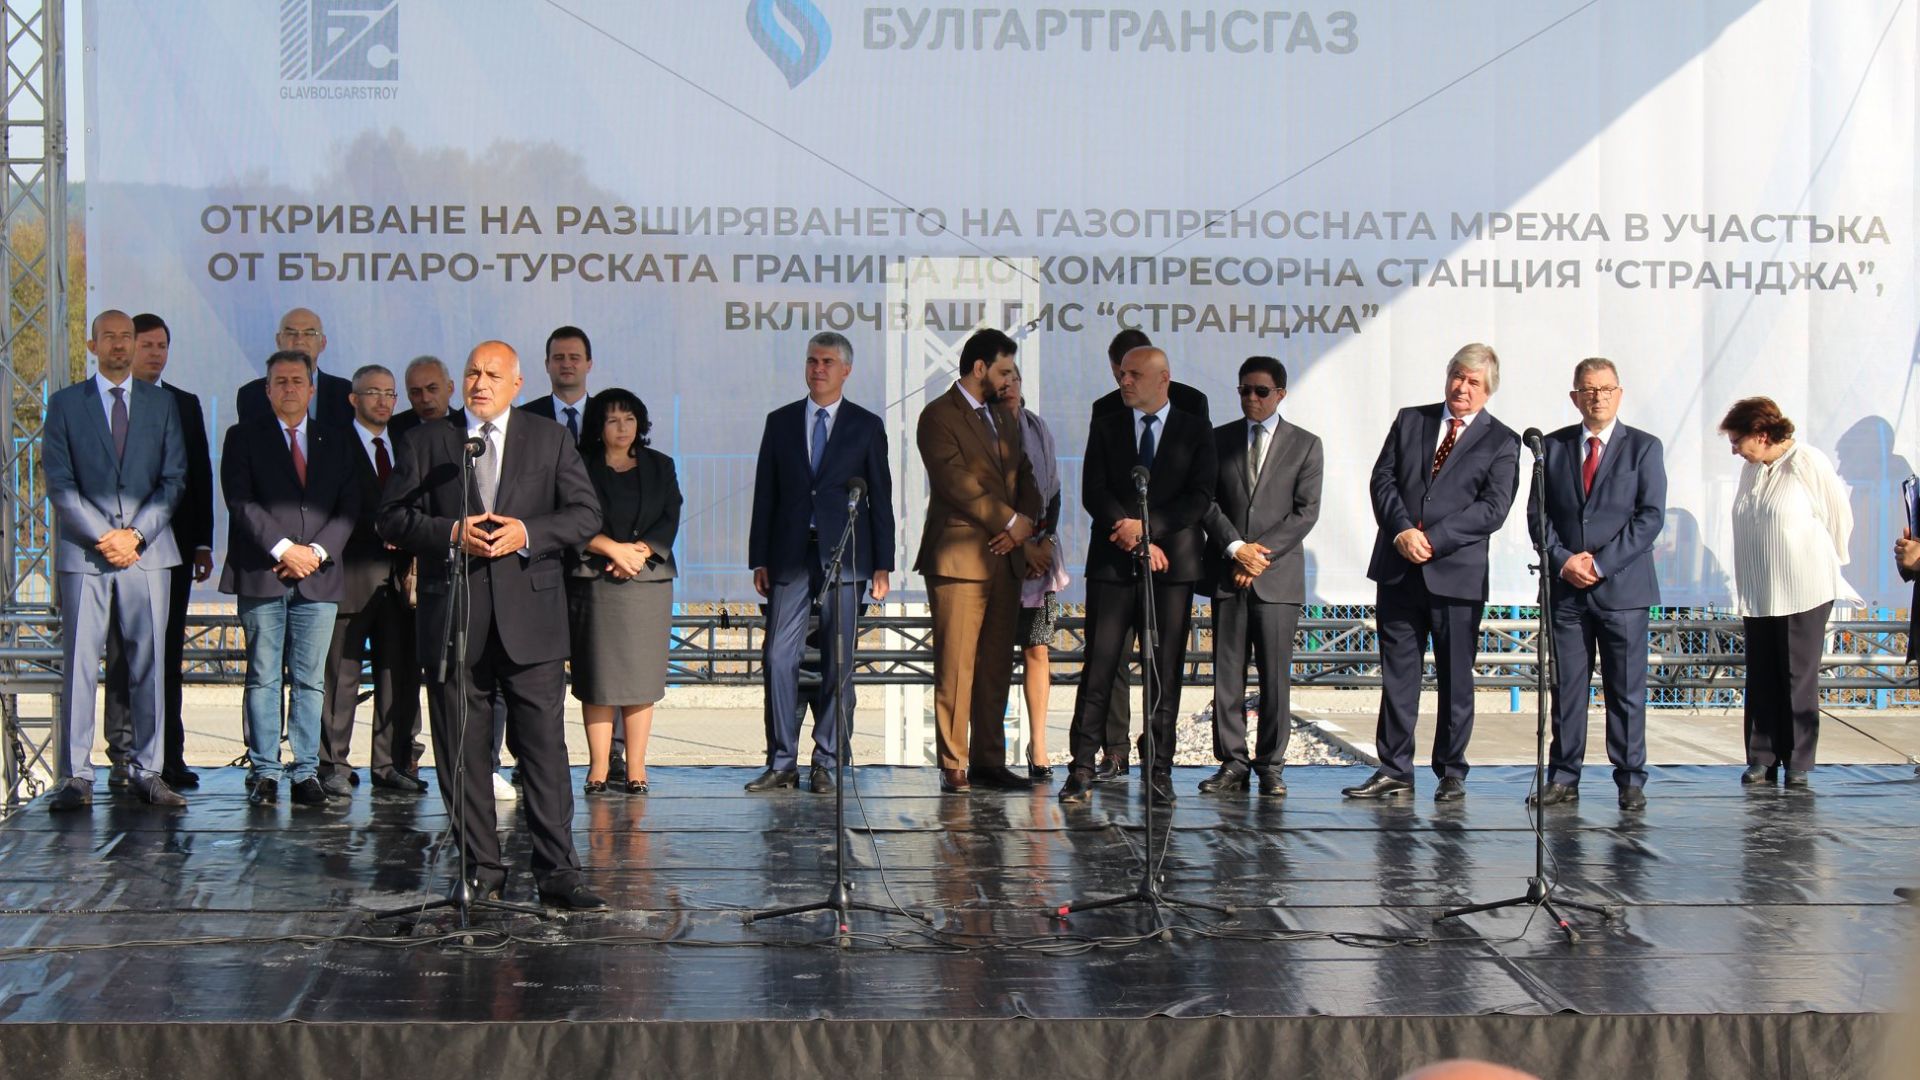 Премиерът Бойко Борисов откри разширението на газопреносната мрежа по трасето